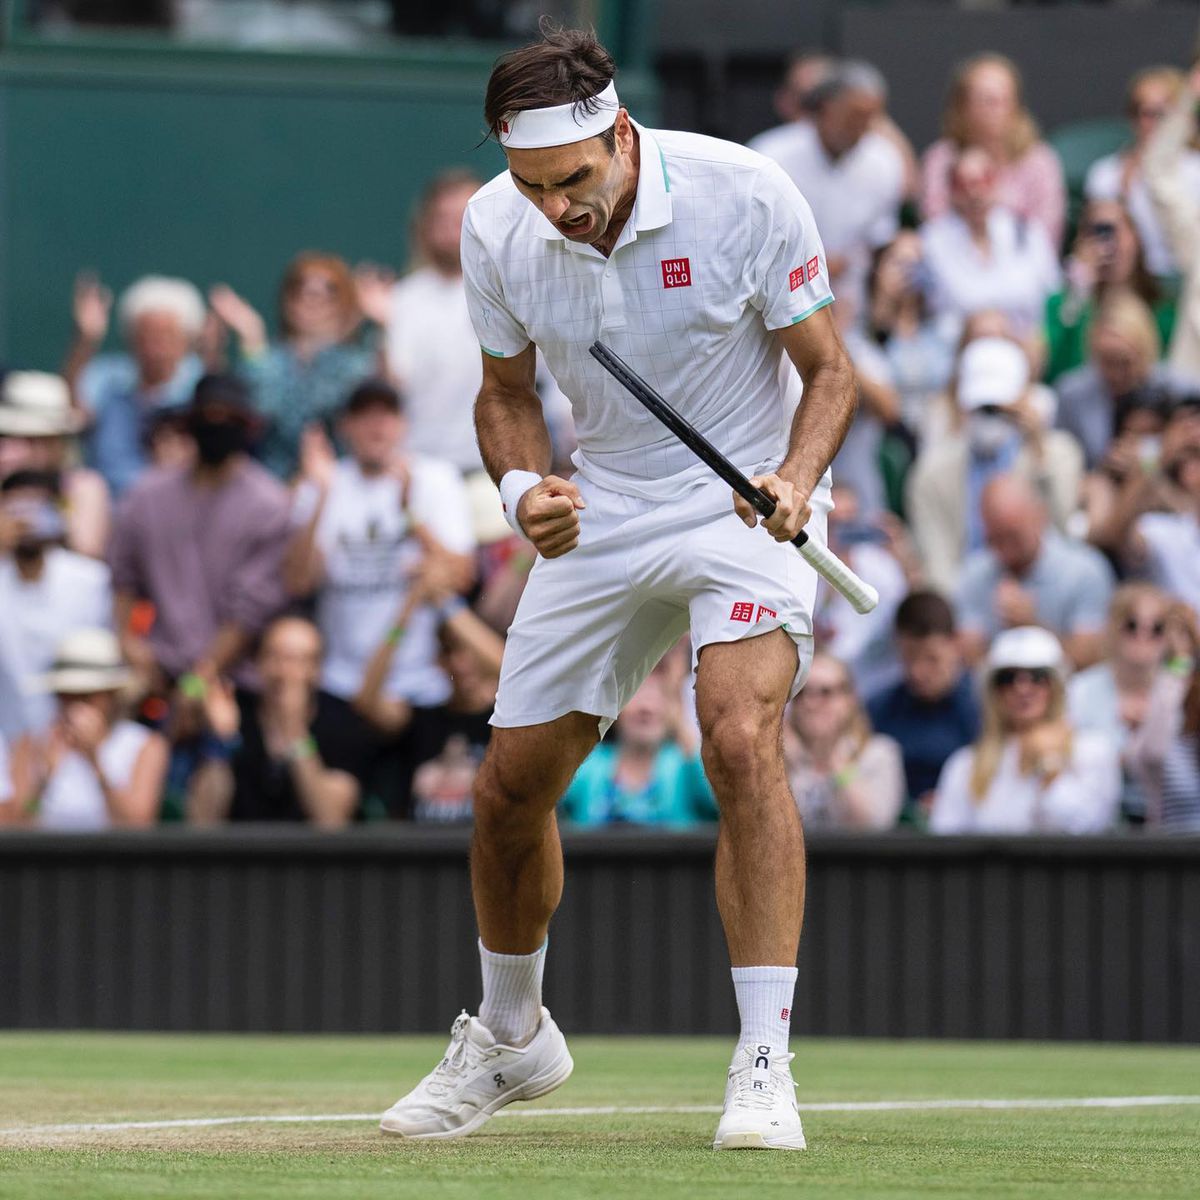 Uriașul Roger Federer și-a anunțat retragerea din tenis